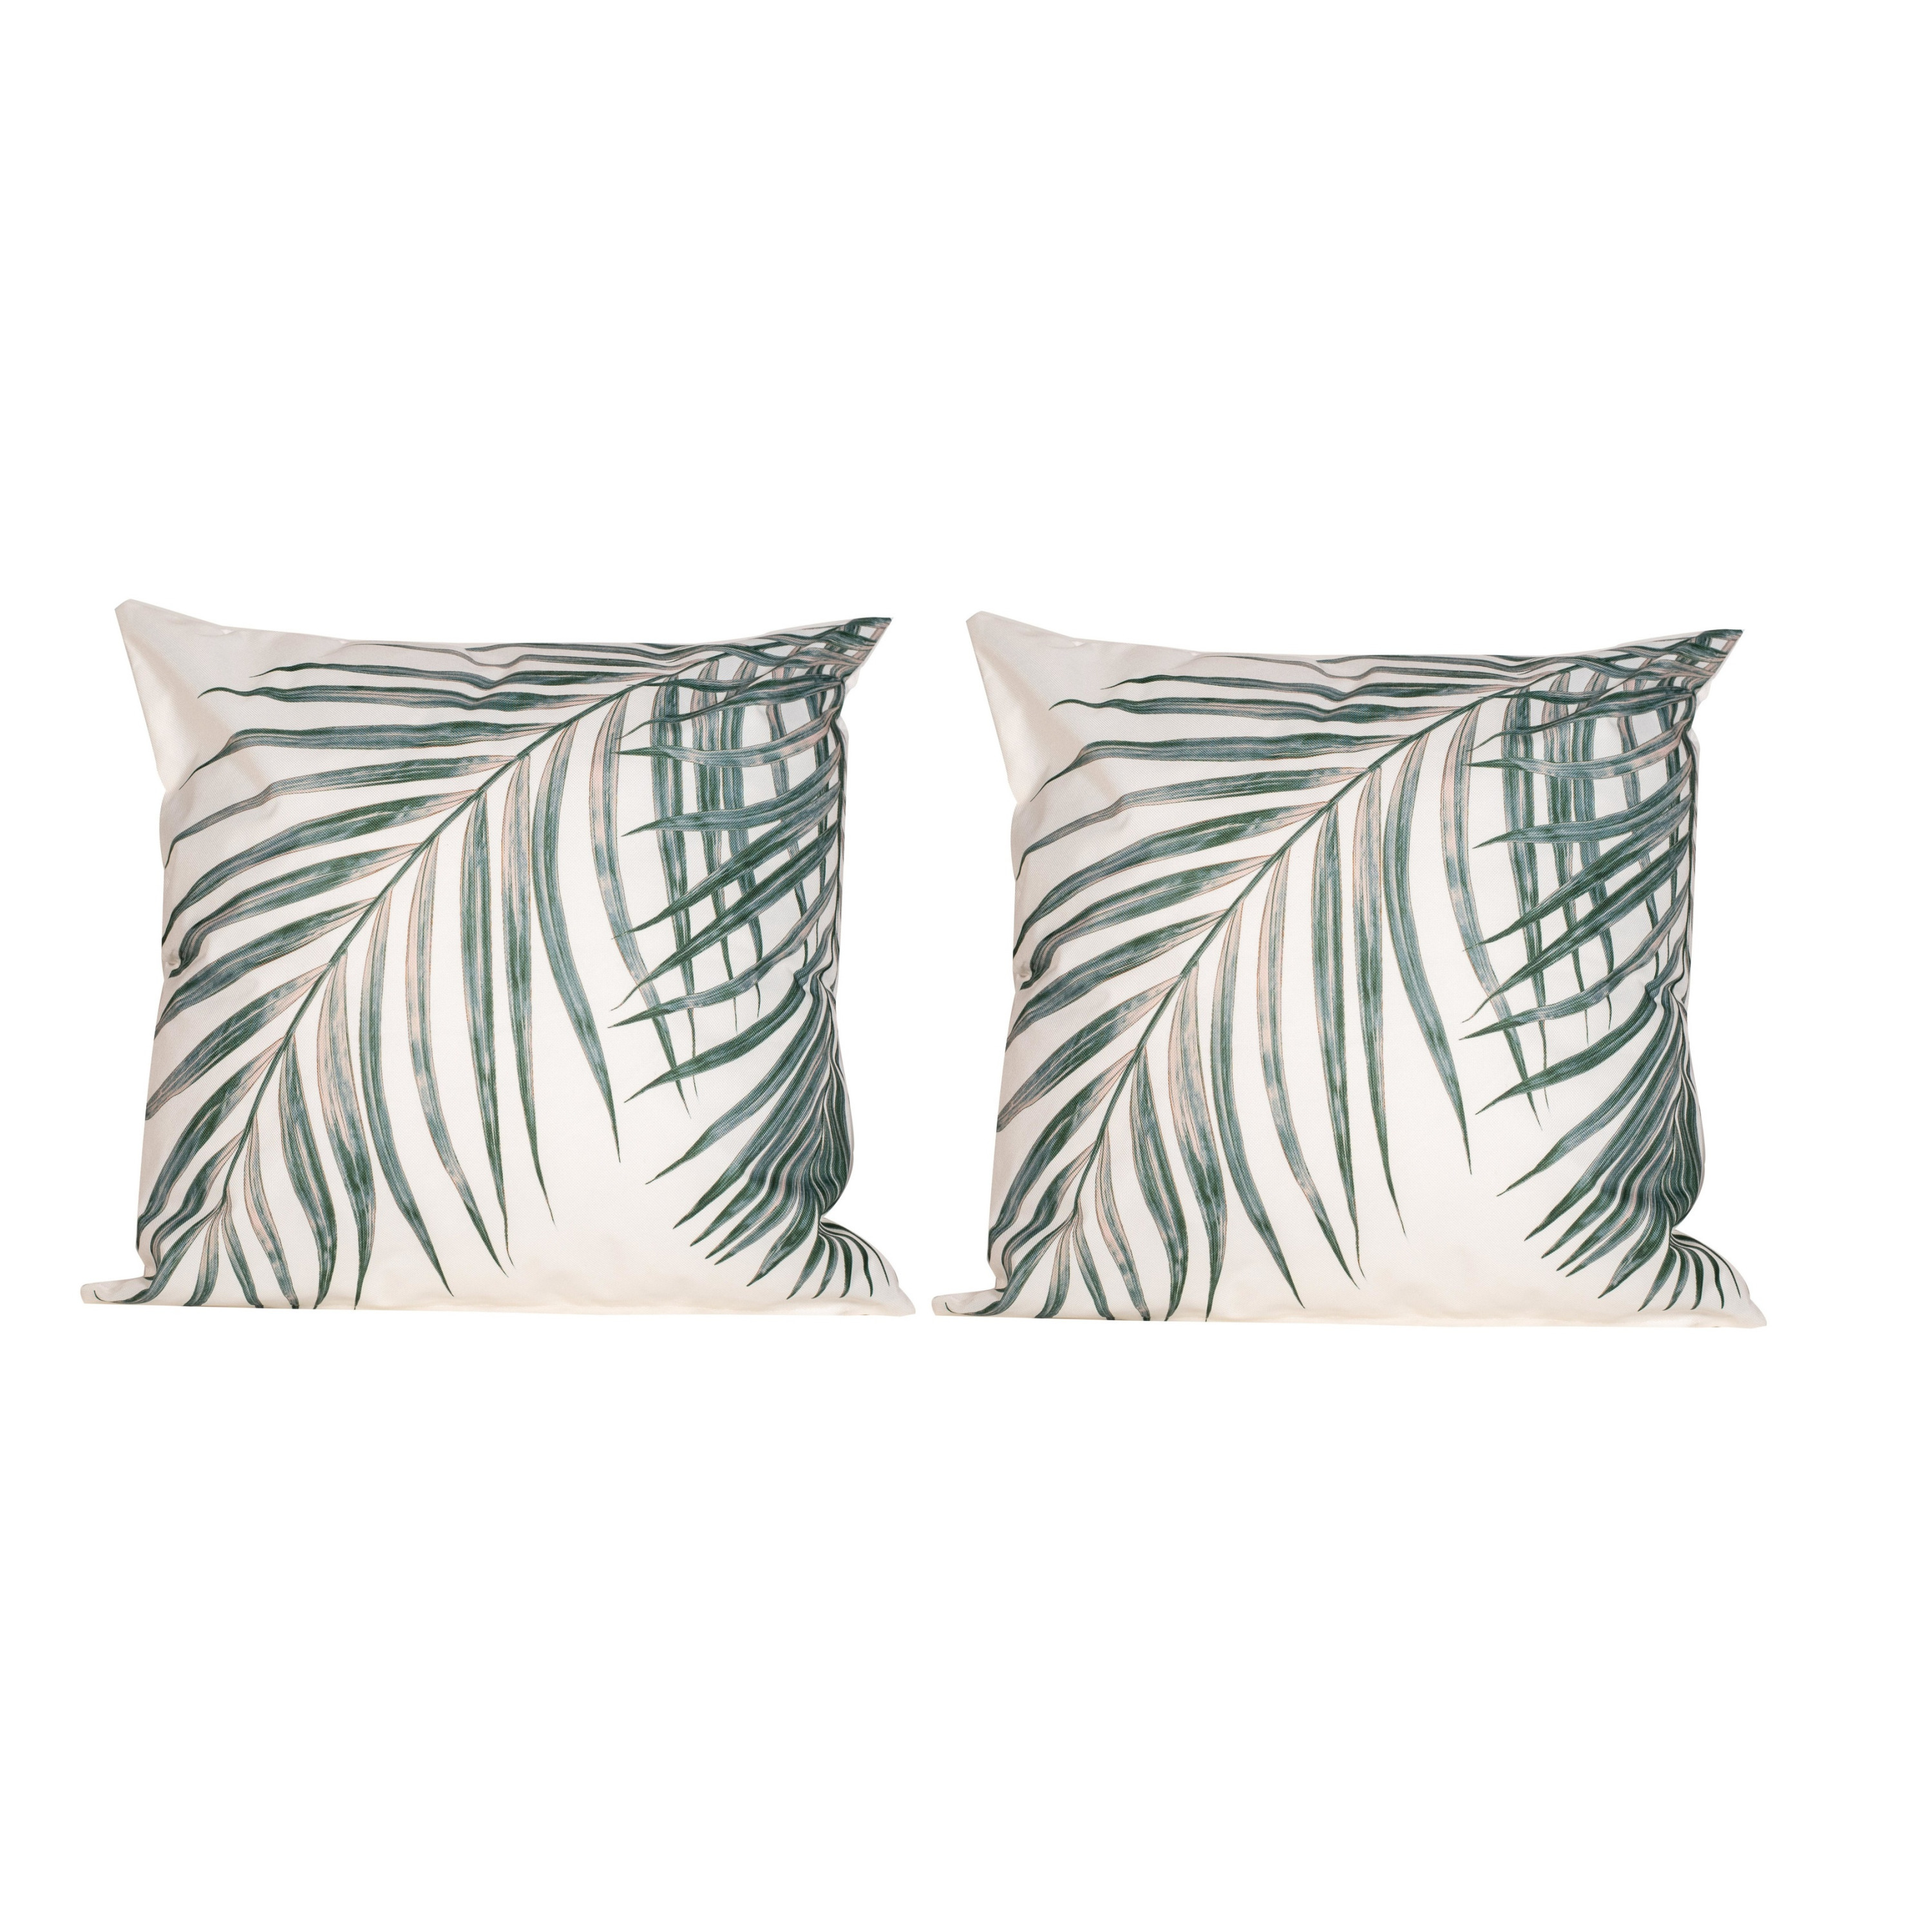 2x Bank-sier kussens met palm plant-blad print voor binnen en buiten 45 x 45 cm